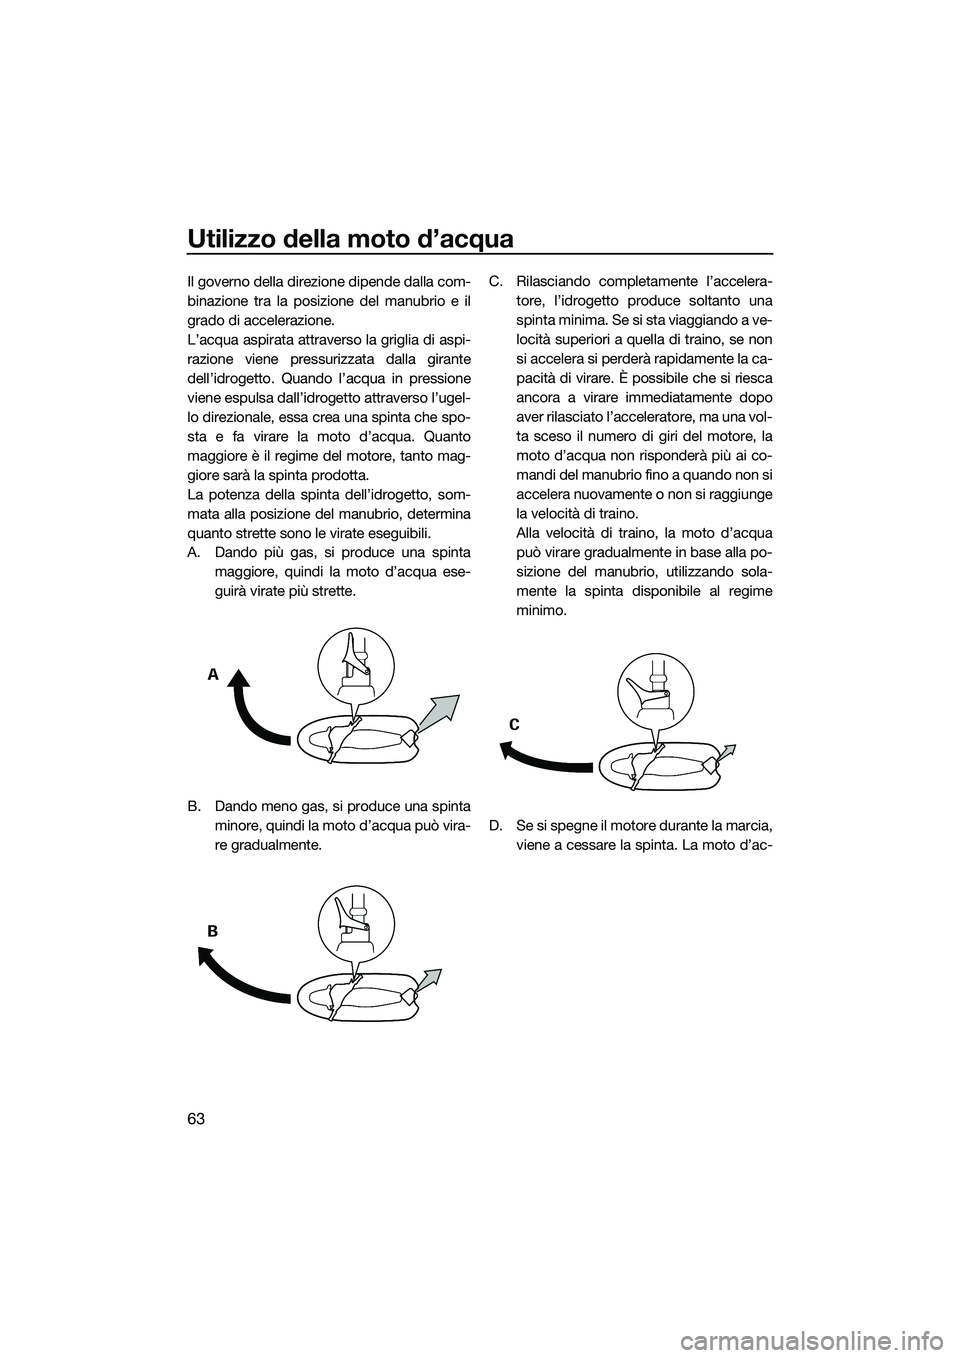 YAMAHA V1 2015  Manuale duso (in Italian) Utilizzo della moto d’acqua
63
Il governo della direzione dipende dalla com-
binazione tra la posizione del manubrio e il
grado di accelerazione.
L’acqua aspirata attraverso la griglia di aspi-
ra